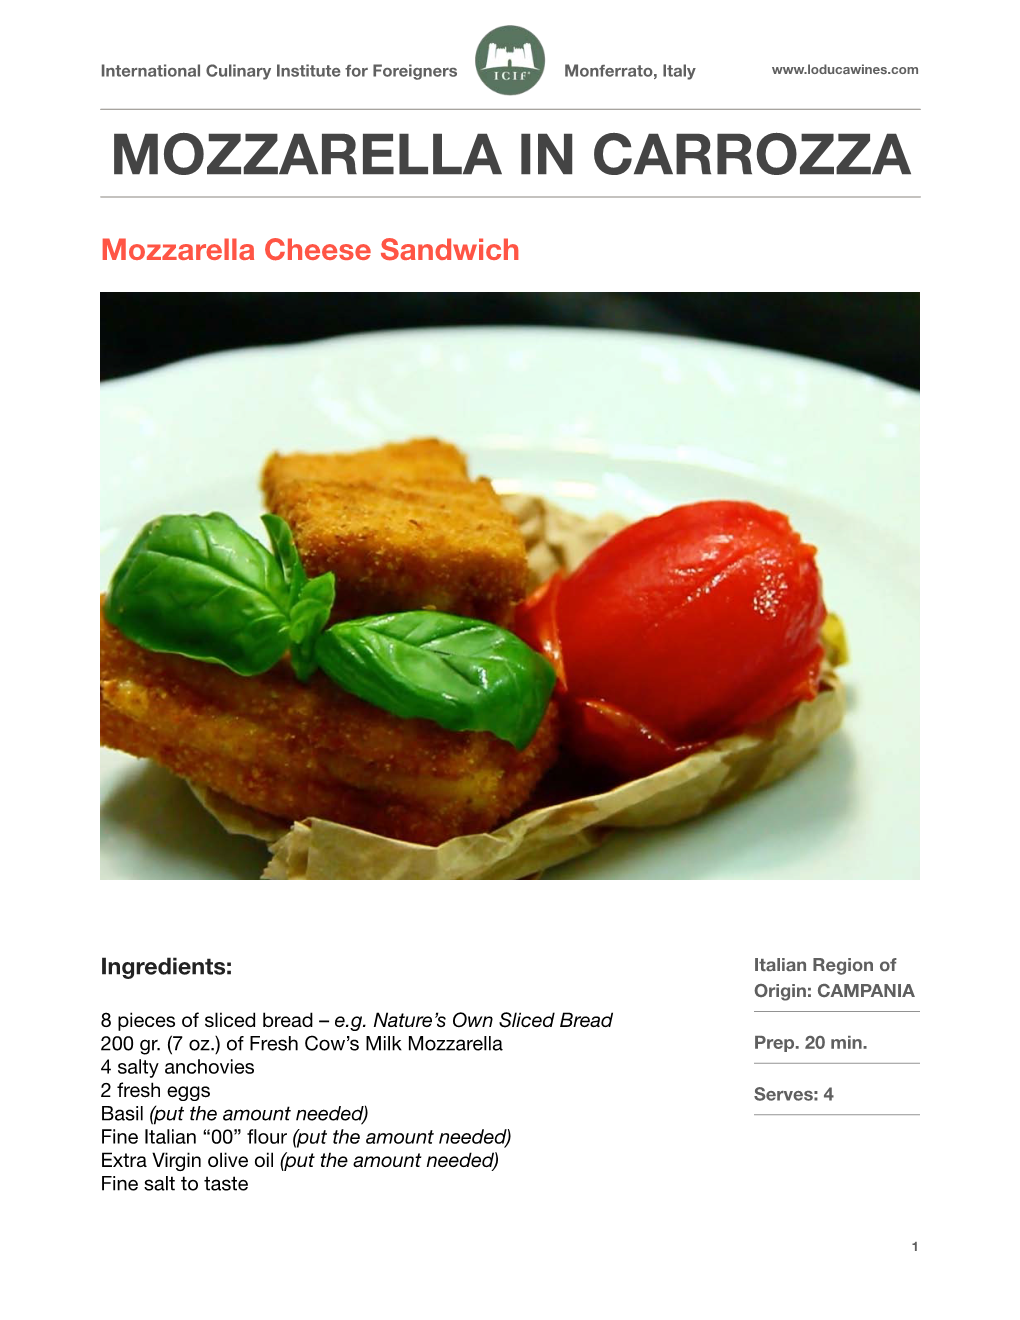 MOZZARELLA in CARROZZA (Mozzarella Cheese Sandwich)